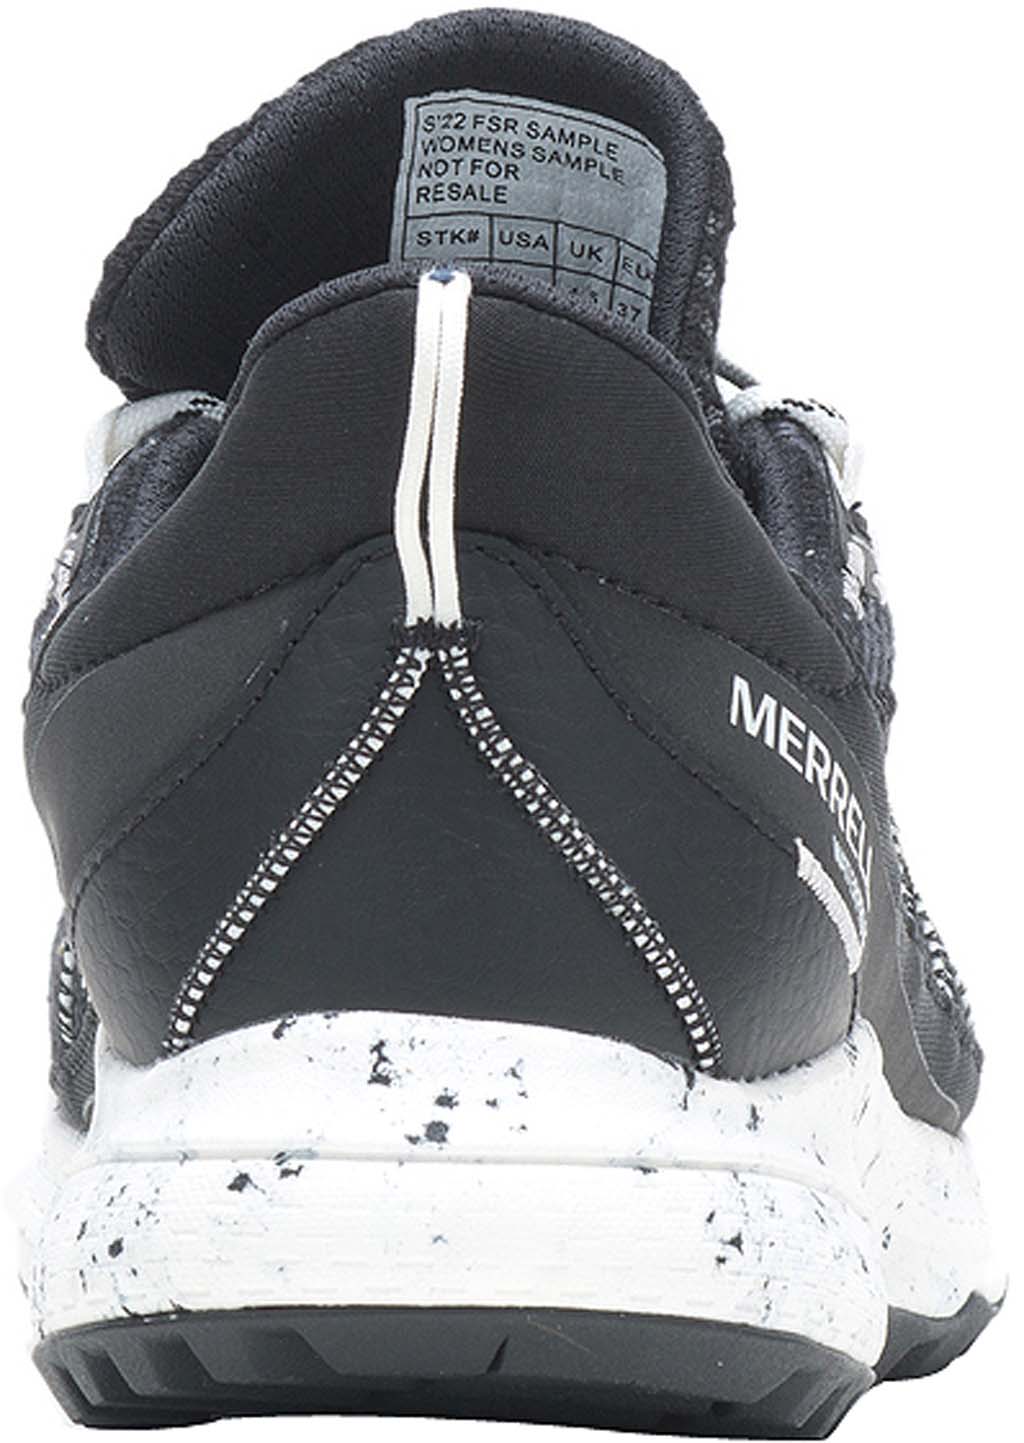 Merrell Bravada 2 Waterproof Hiking Shoes Women's